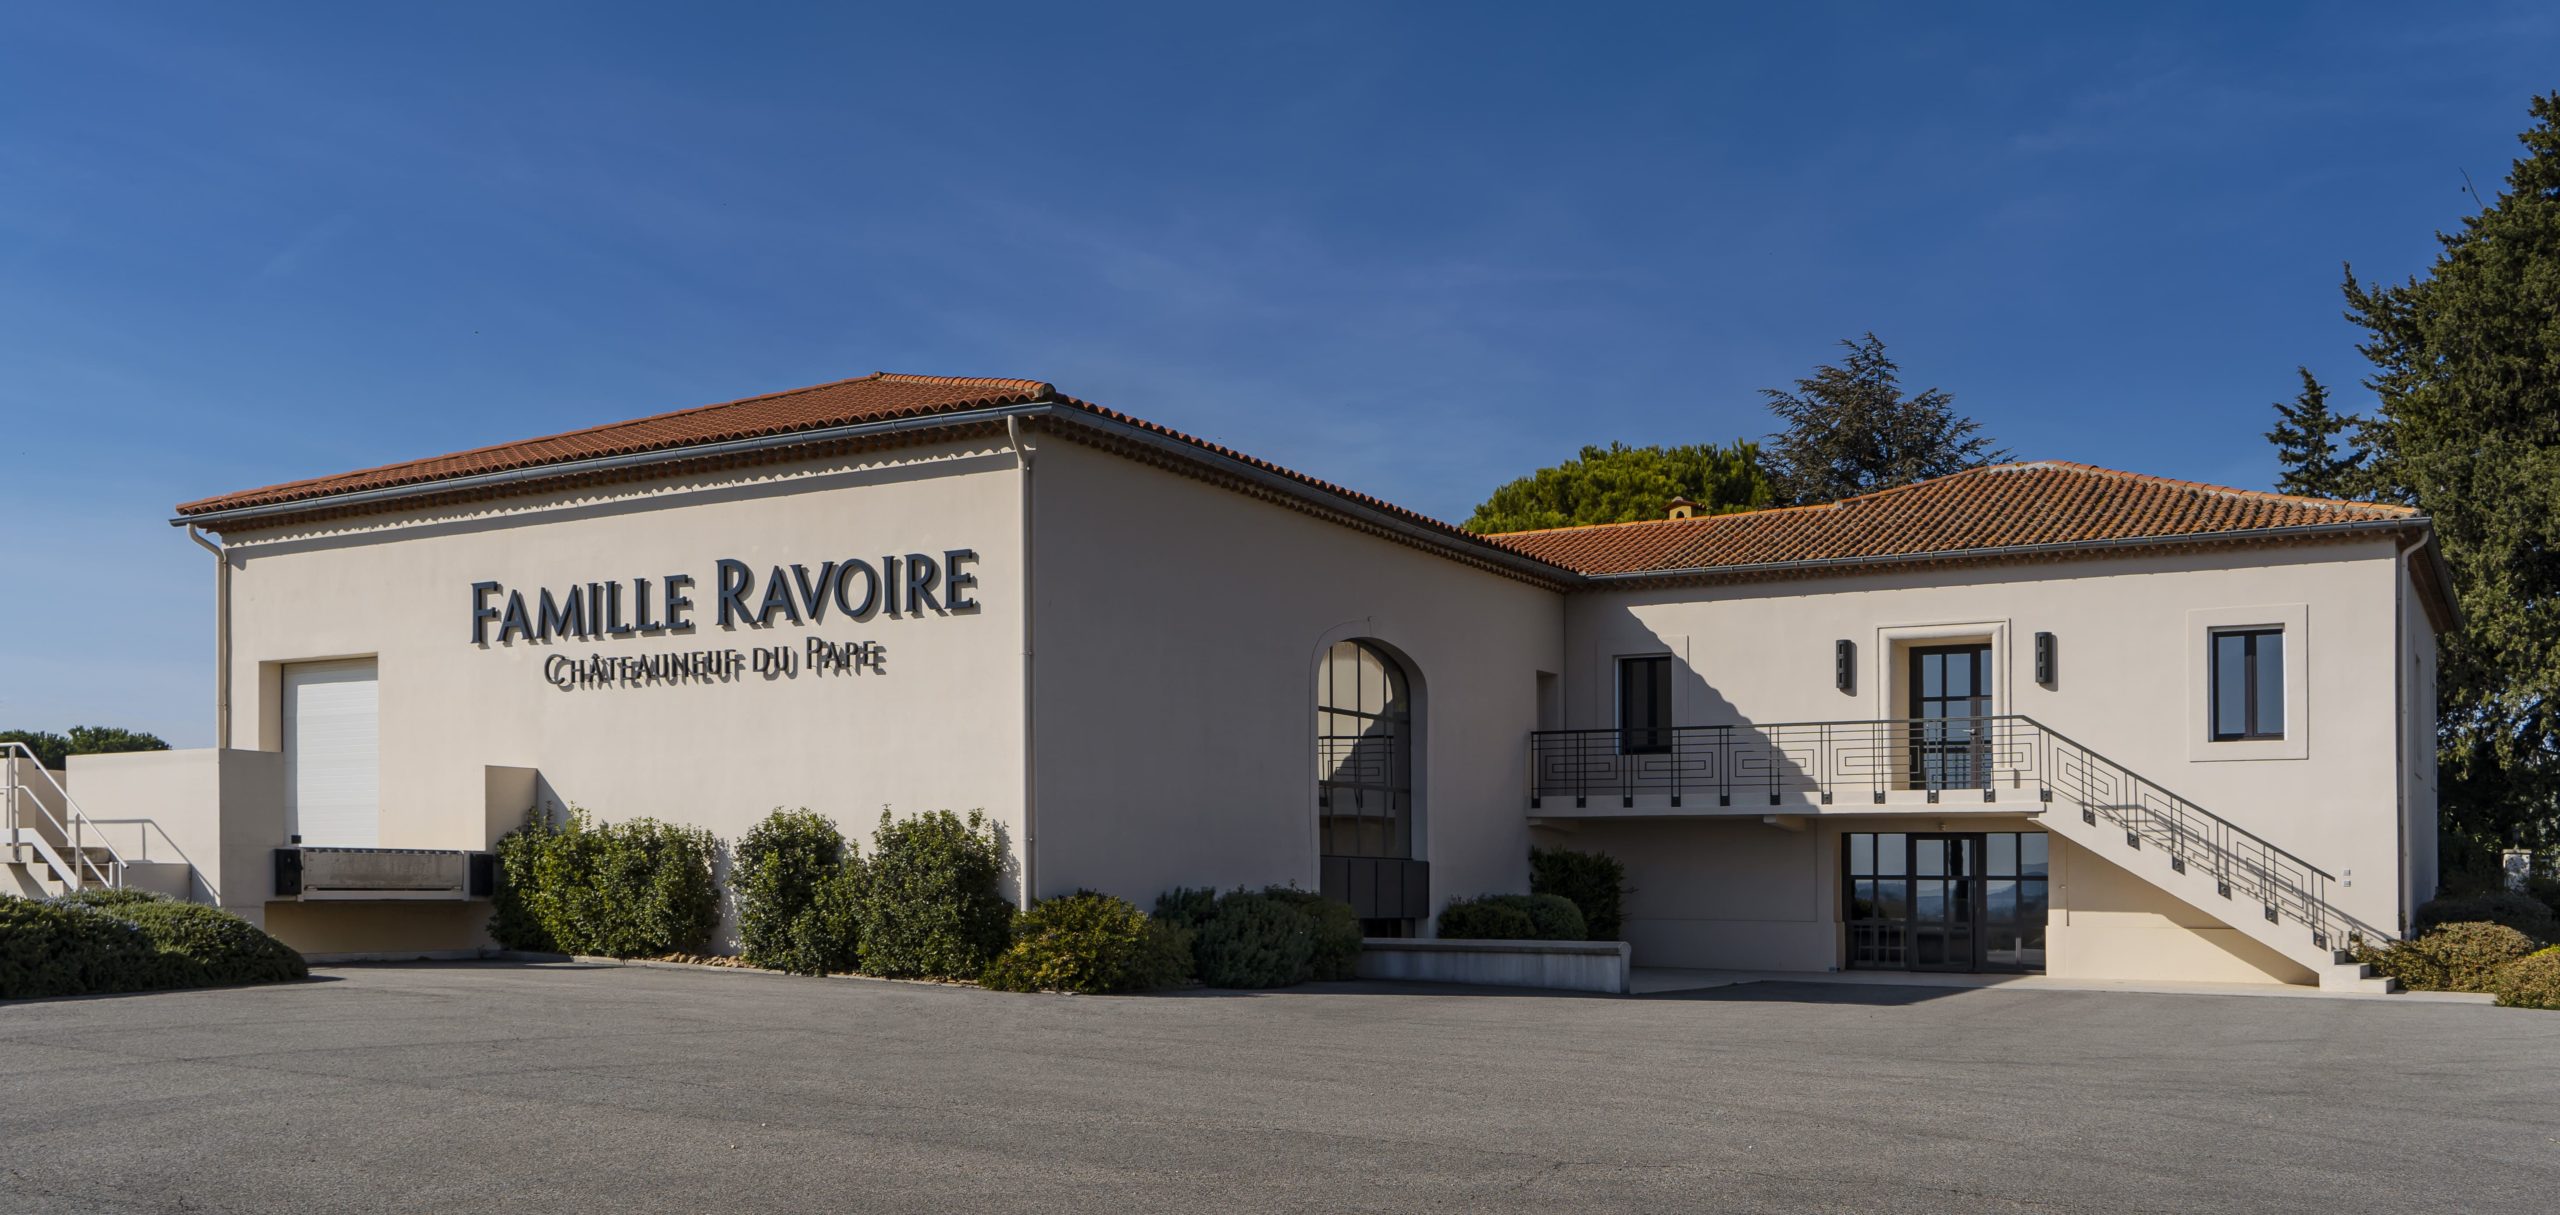 Famille Ravoire – Châteauneuf du Pape